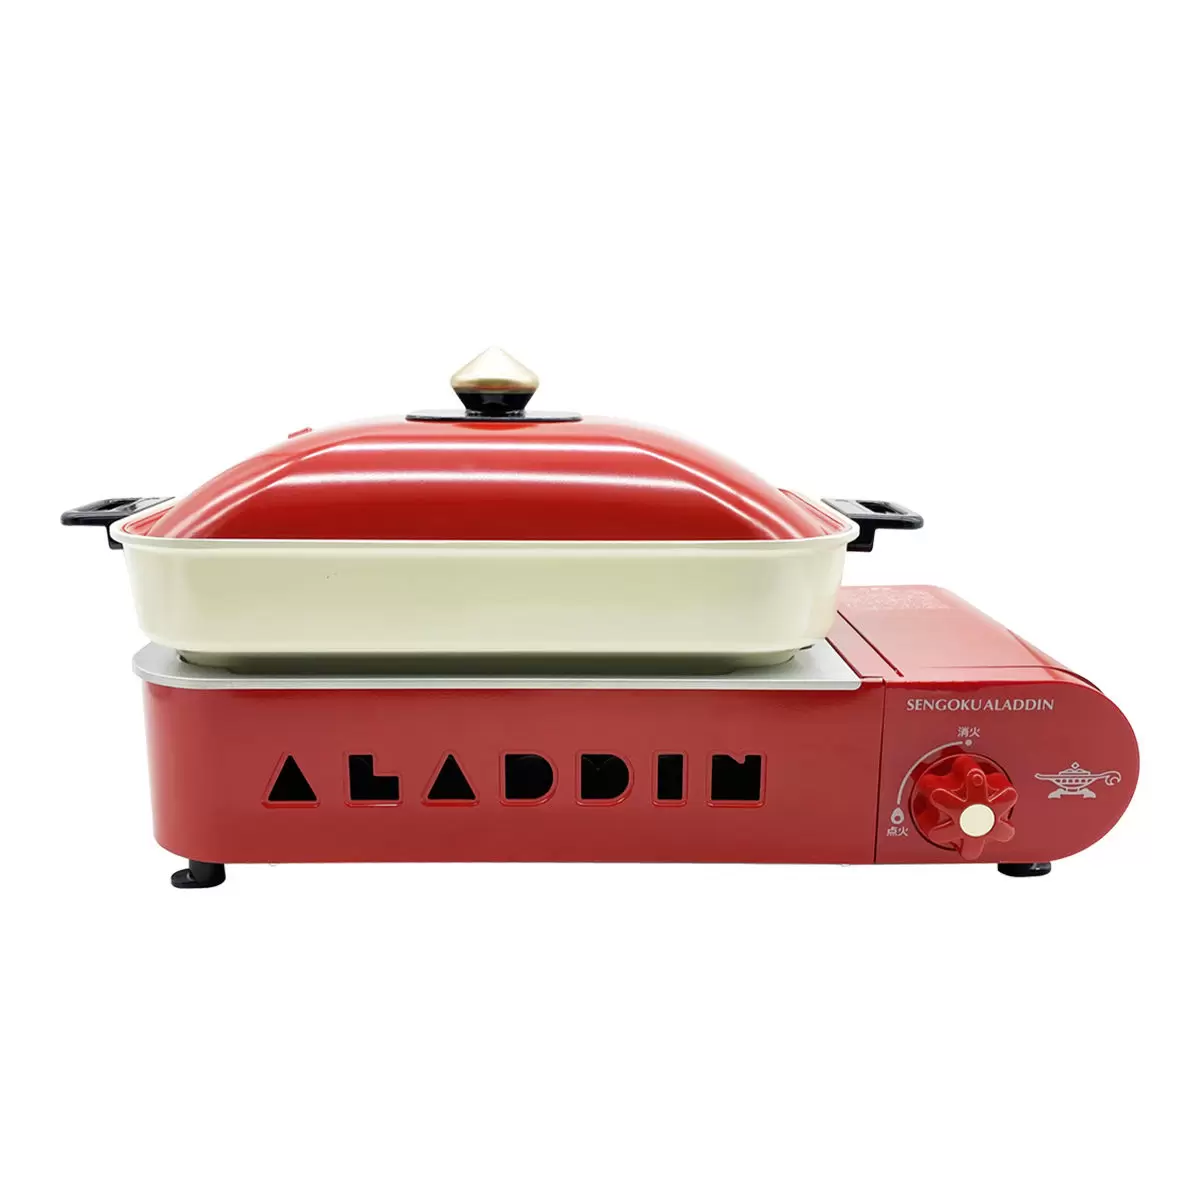 千石阿拉丁 2.1kW 煎煮烤雙盤卡式爐 SAG-RS21R 紅色